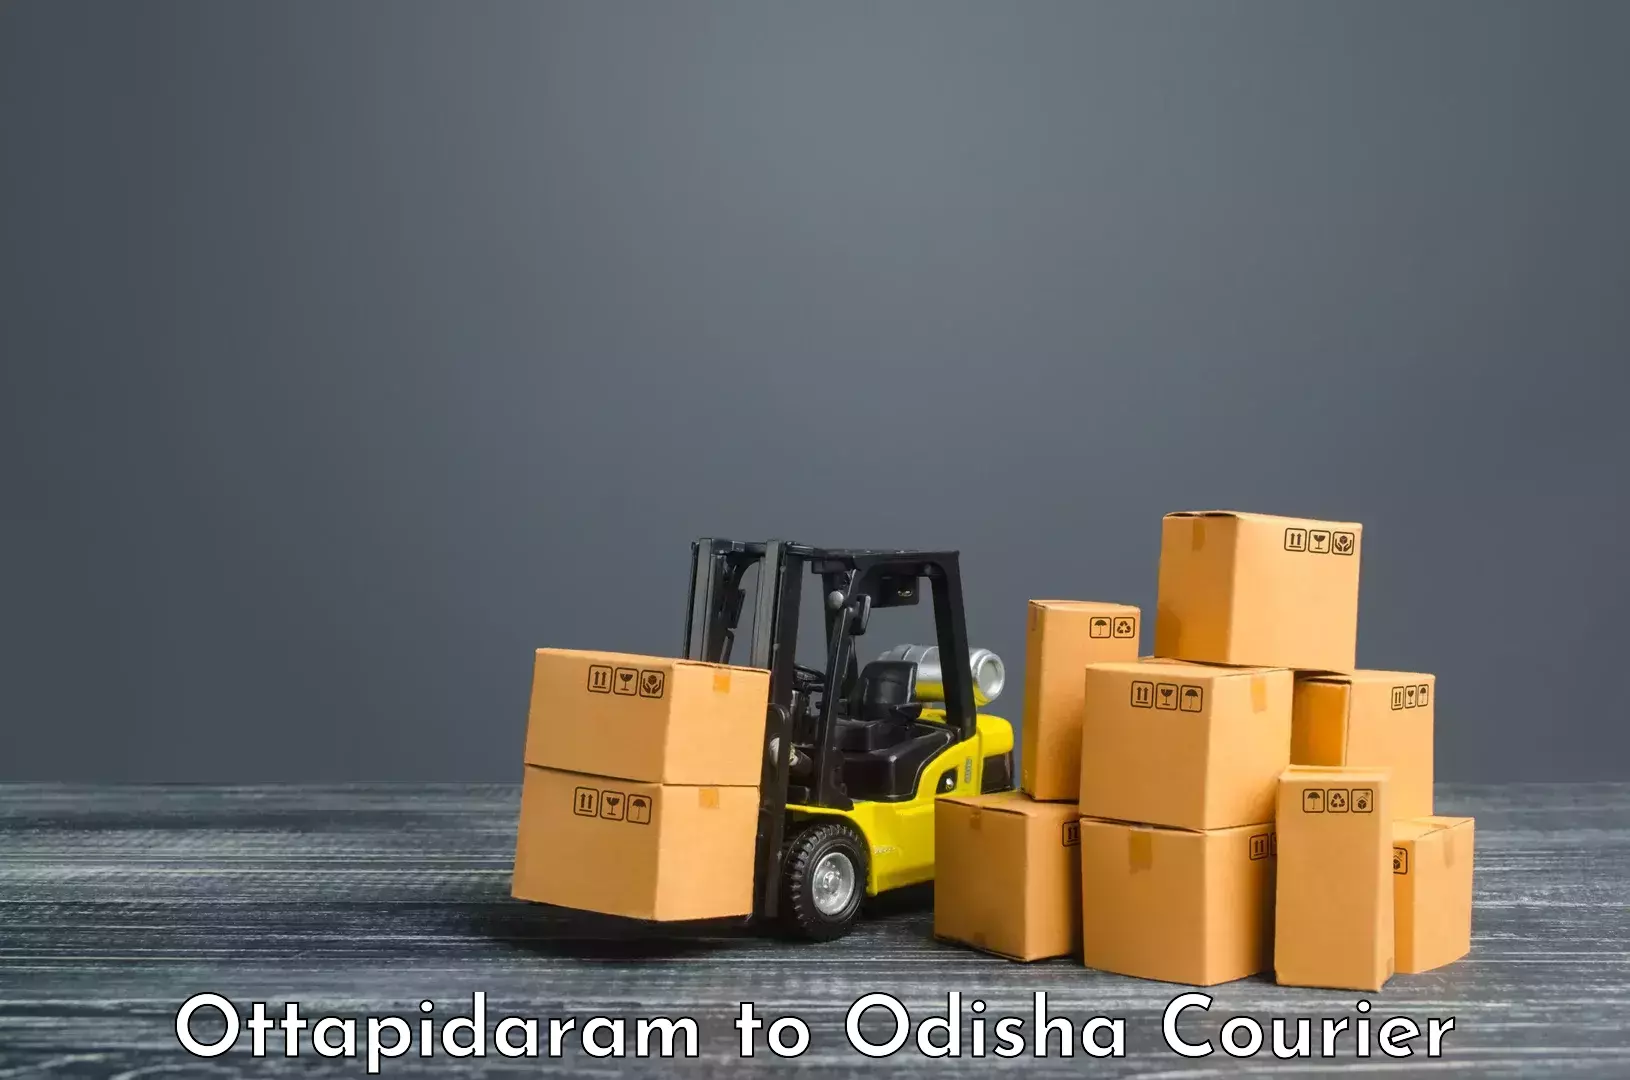 Speedy delivery service Ottapidaram to Melchhamunda